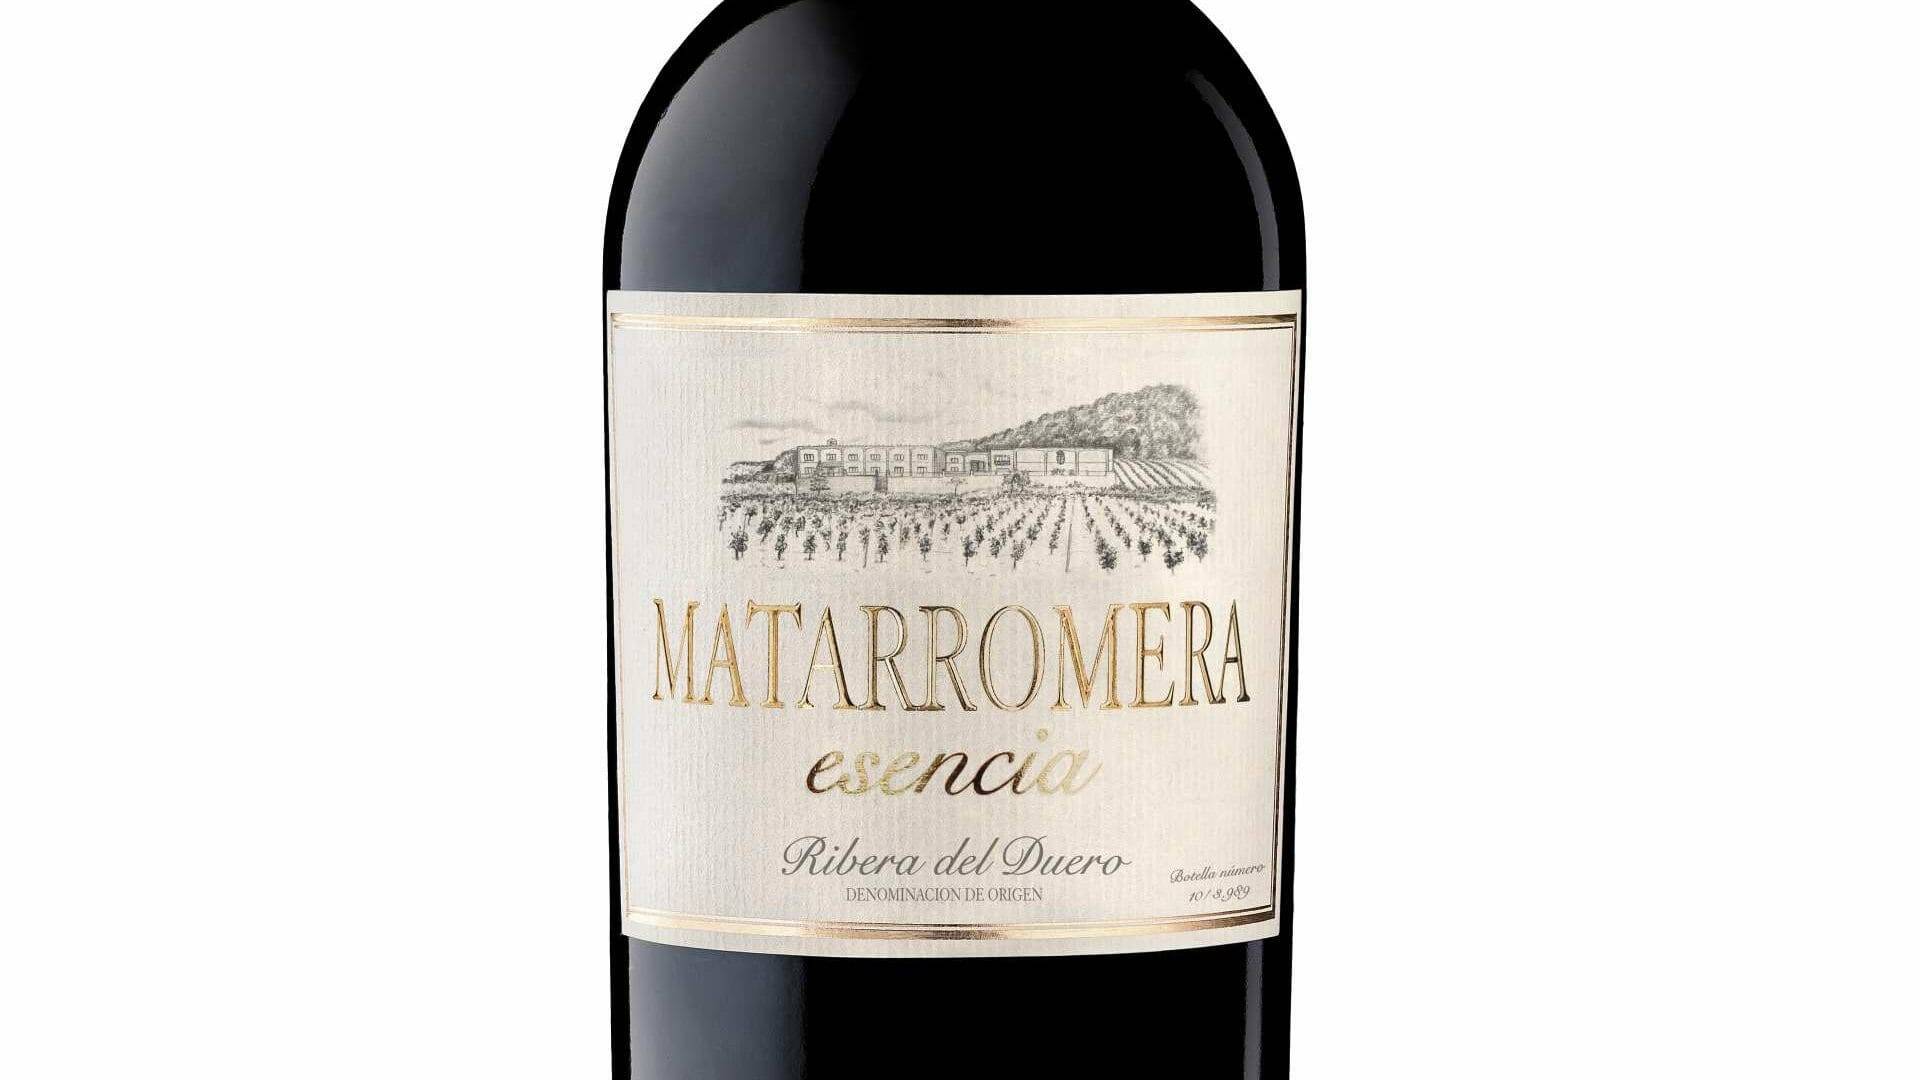 Mararromera Esencia es un vino prefecto para regalar en las próximas navidades, eso si: ¡date prisa porque solo hay 3.989 botellas!